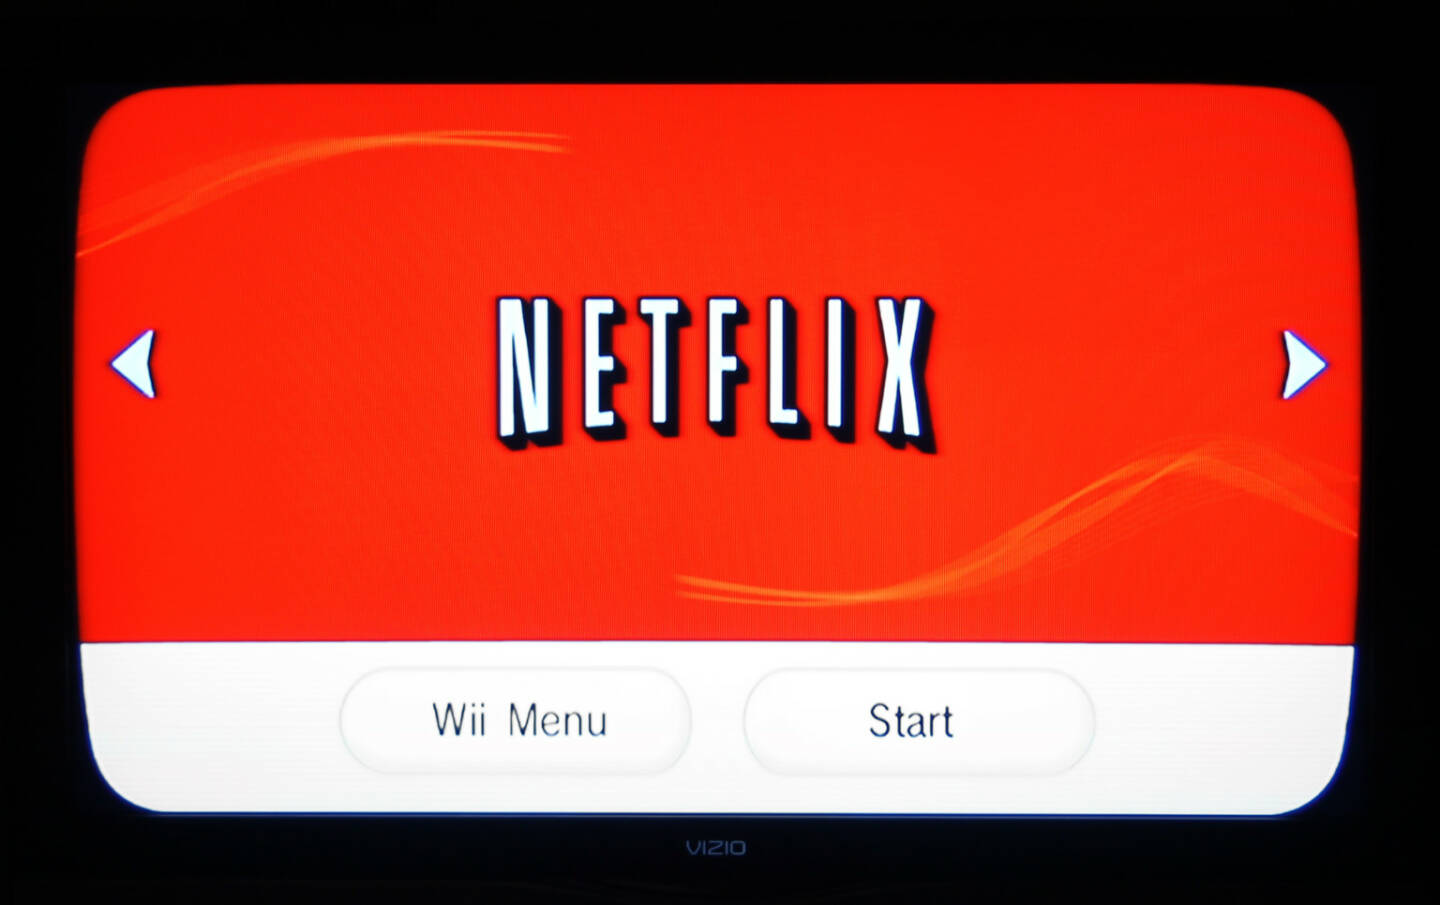 Netflix, Wii Menu, Start <a href=http://www.shutterstock.com/gallery-79405p1.html?cr=00&pl=edit-00>Annette Shaff</a> / <a href=http://www.shutterstock.com/?cr=00&pl=edit-00>Shutterstock.com</a>